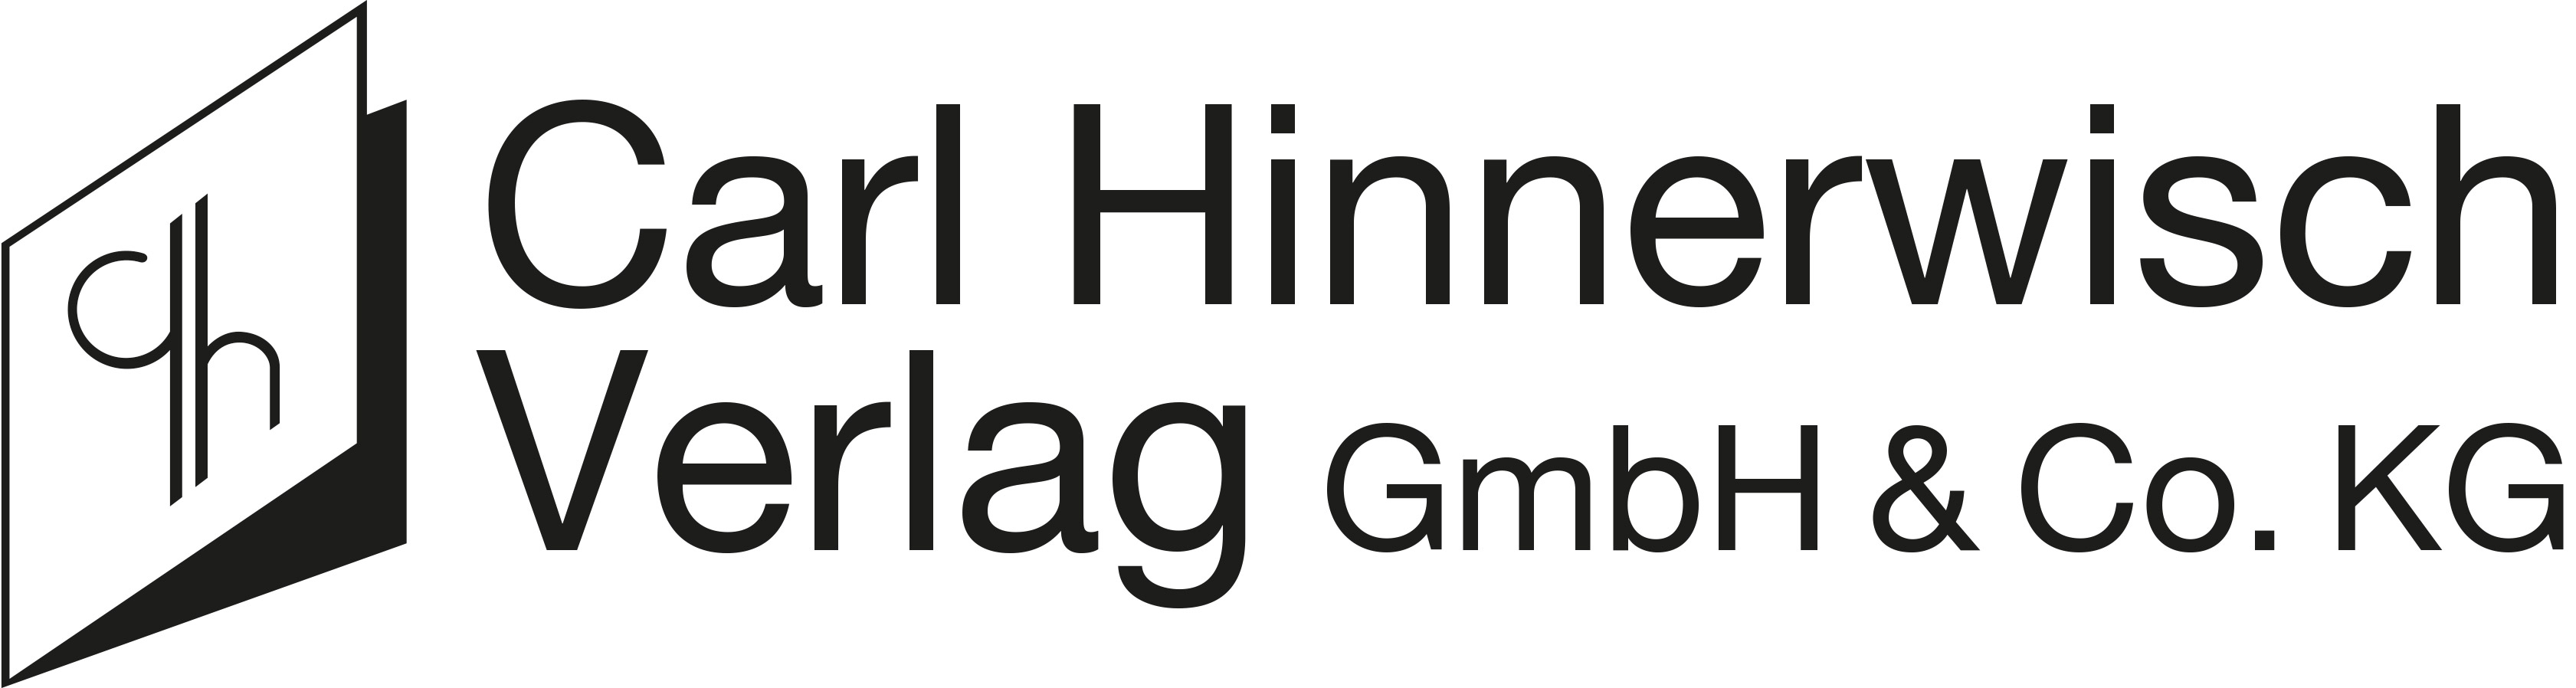 Logo-Carl-Hinnerwisch-Verlag